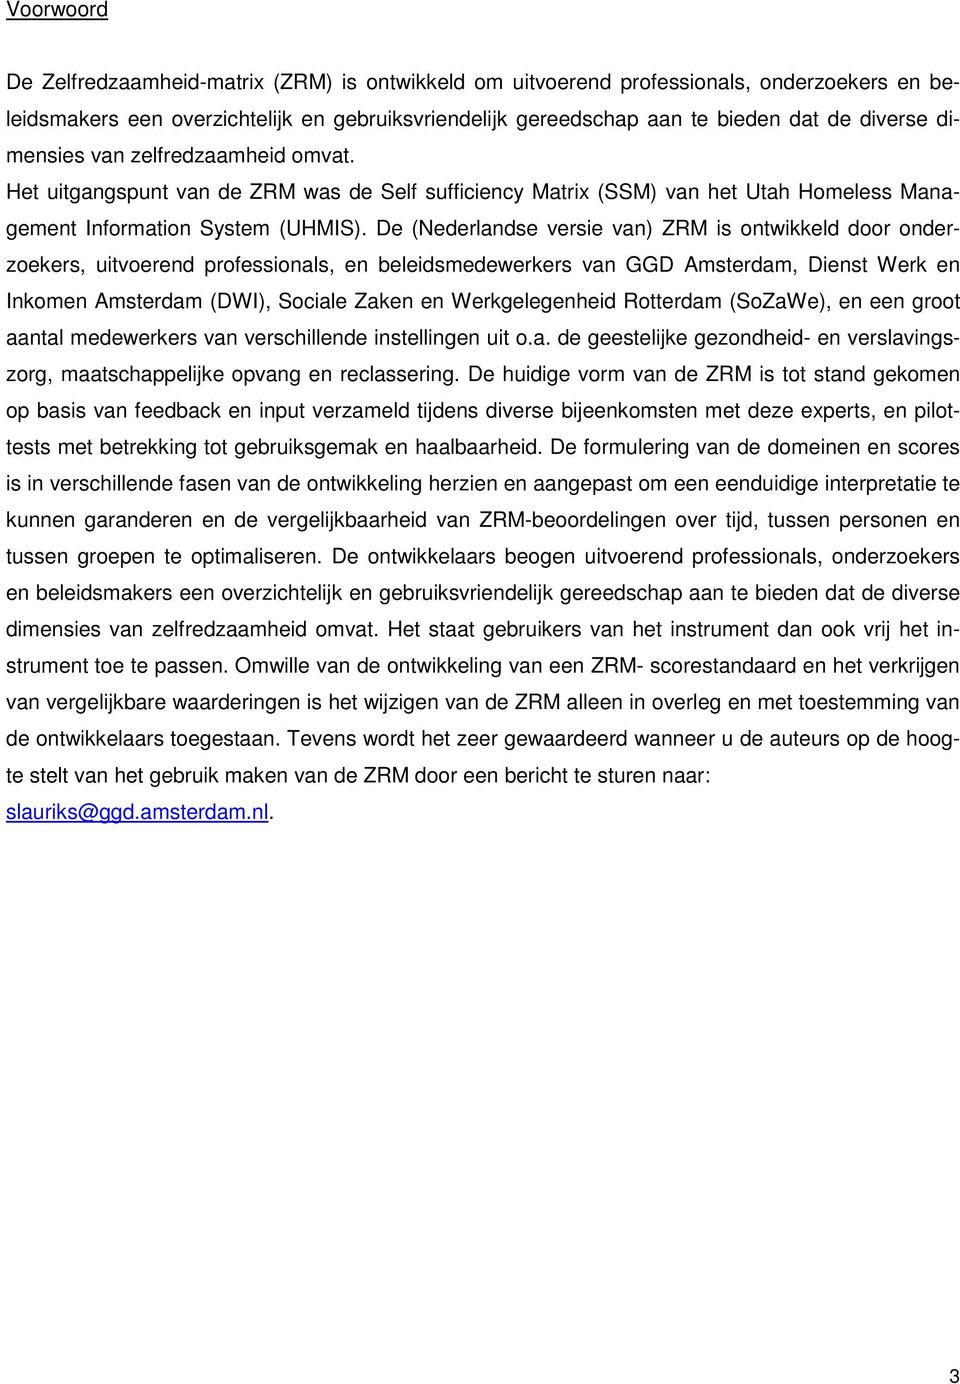 De (Nederlandse versie van) ZRM is ontwikkeld door onderzoekers, uitvoerend professionals, en beleidsmedewerkers van GGD Amsterdam, Dienst Werk en Inkomen Amsterdam (DWI), Sociale Zaken en